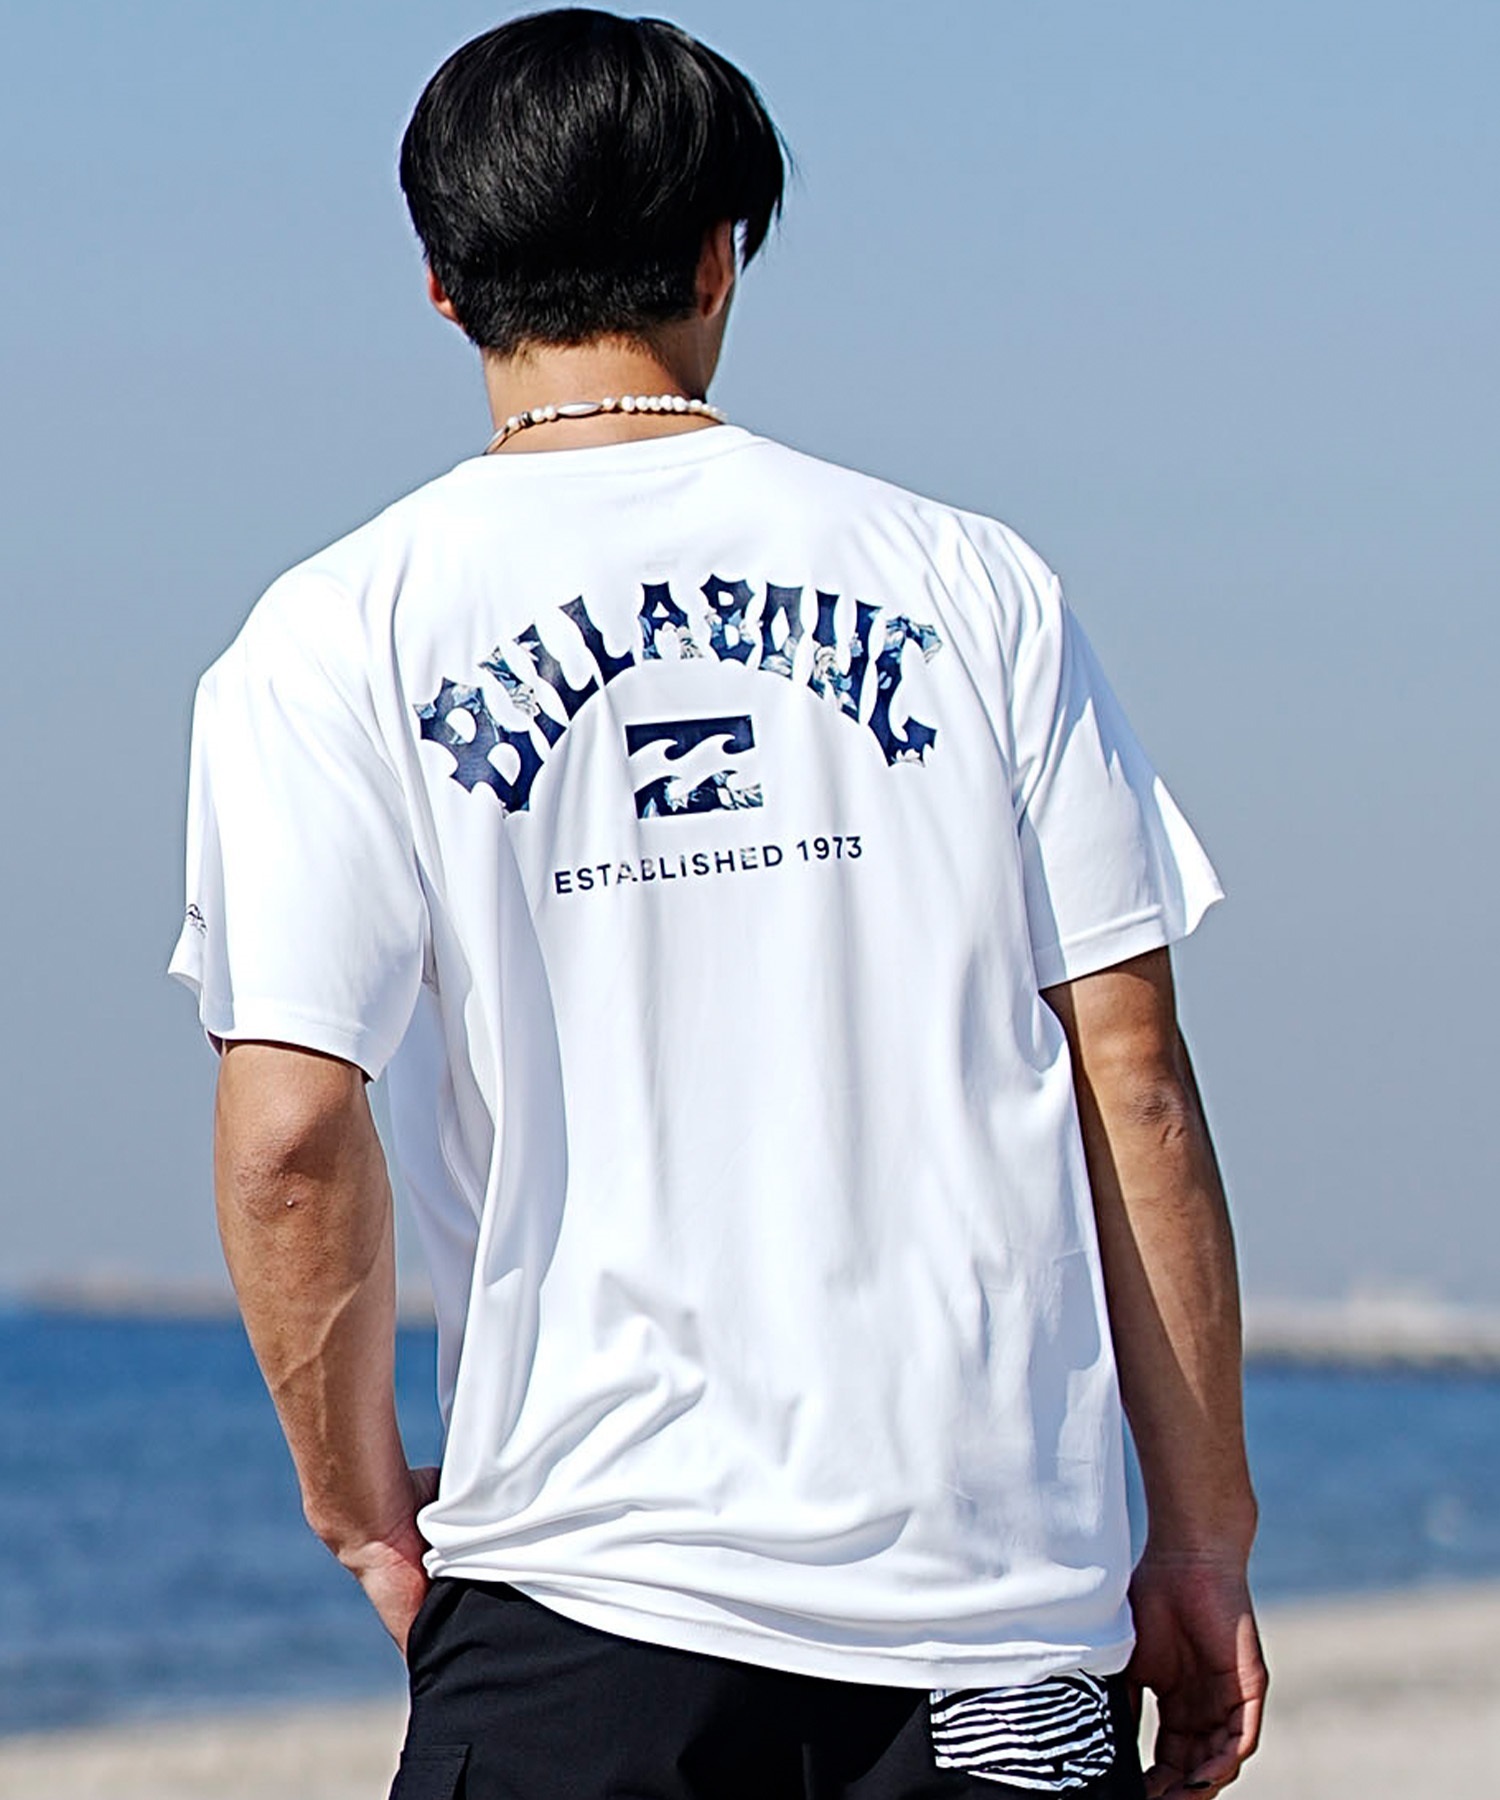 BILLABONG ビラボン メンズ 半袖 ラッシュガード Tシャツ バックプリント ユーティリティ 水陸両用 UVカット BE011-856(MIL-M)